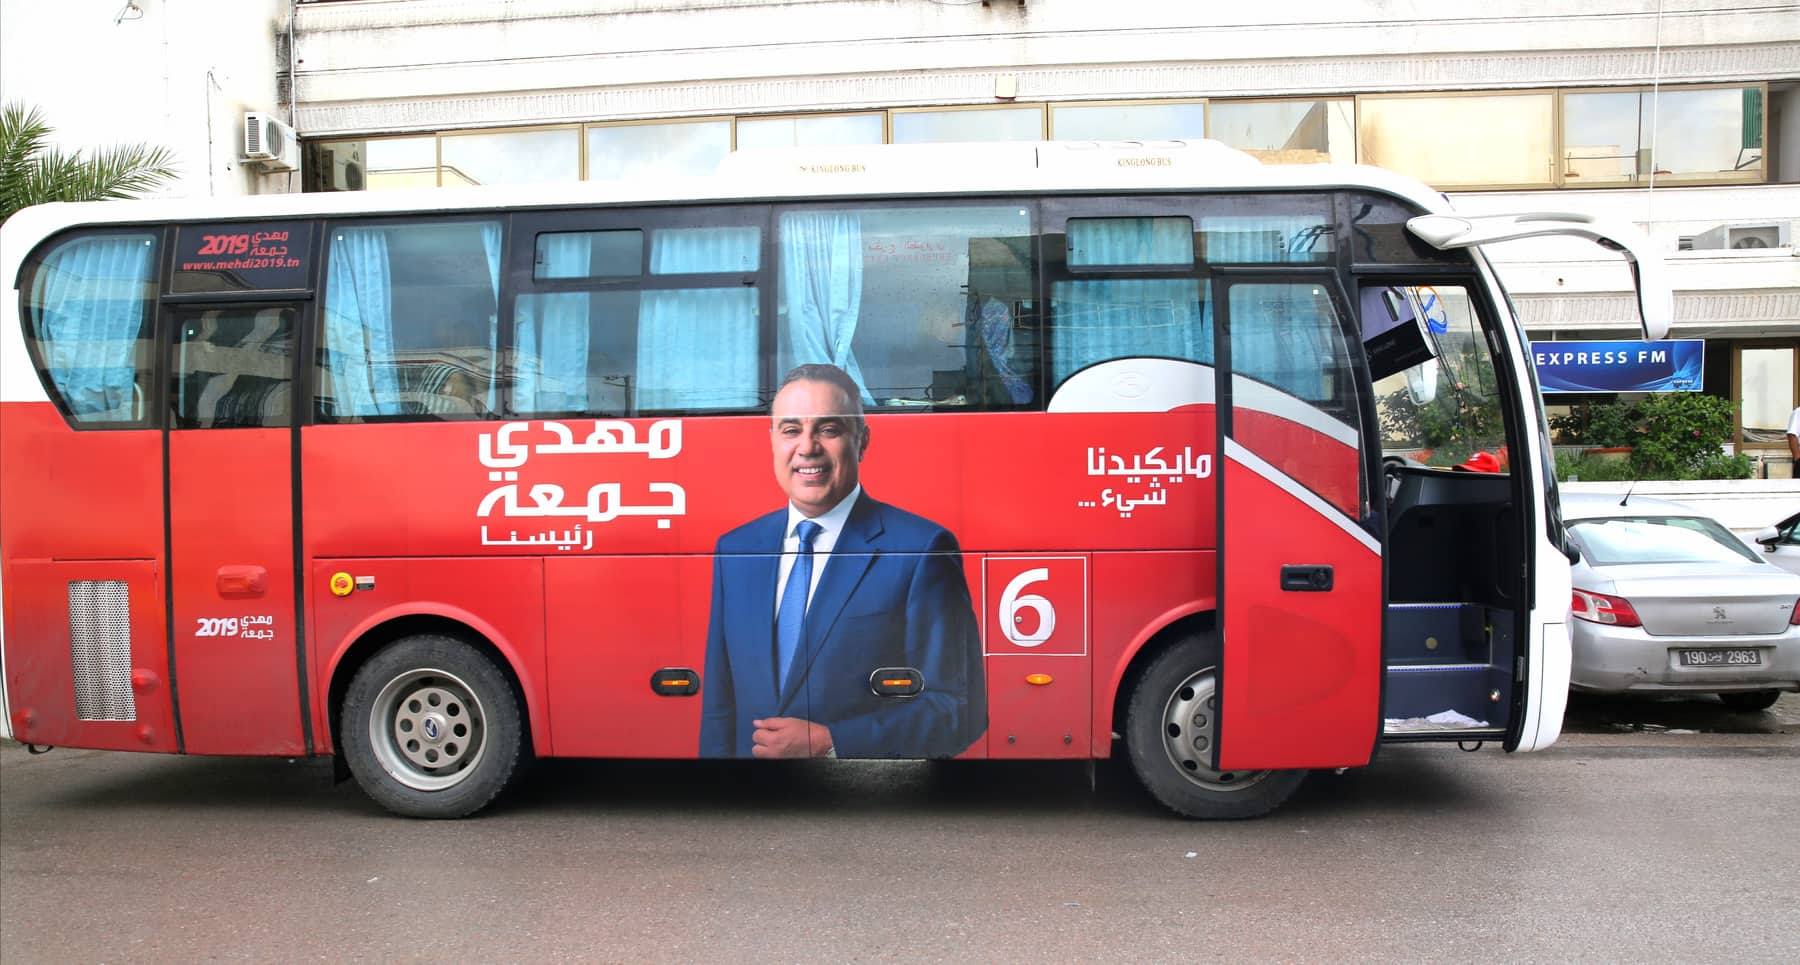 Tunisie-[photos] Le bus de la campagne électorale de Mehdi Jomaâ